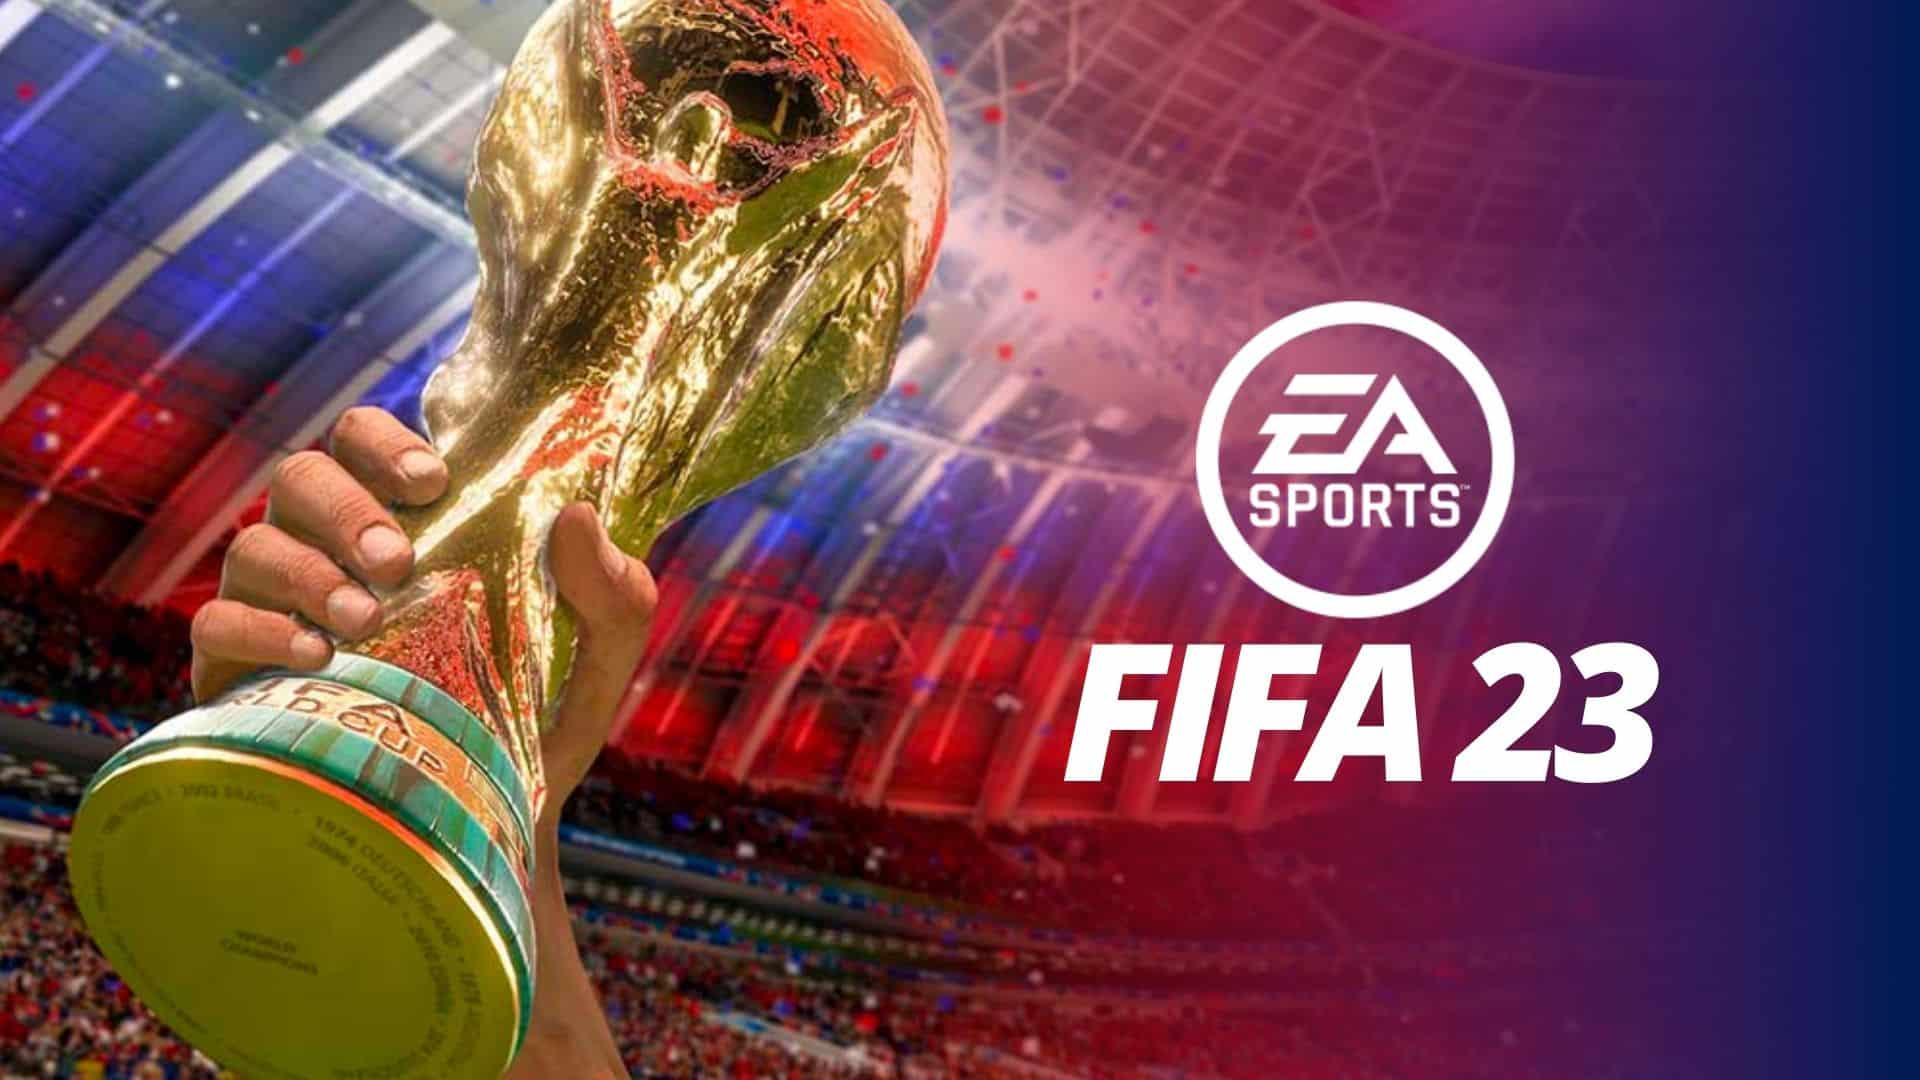 EA добавила карточки шестой команды недели в FIFA 23